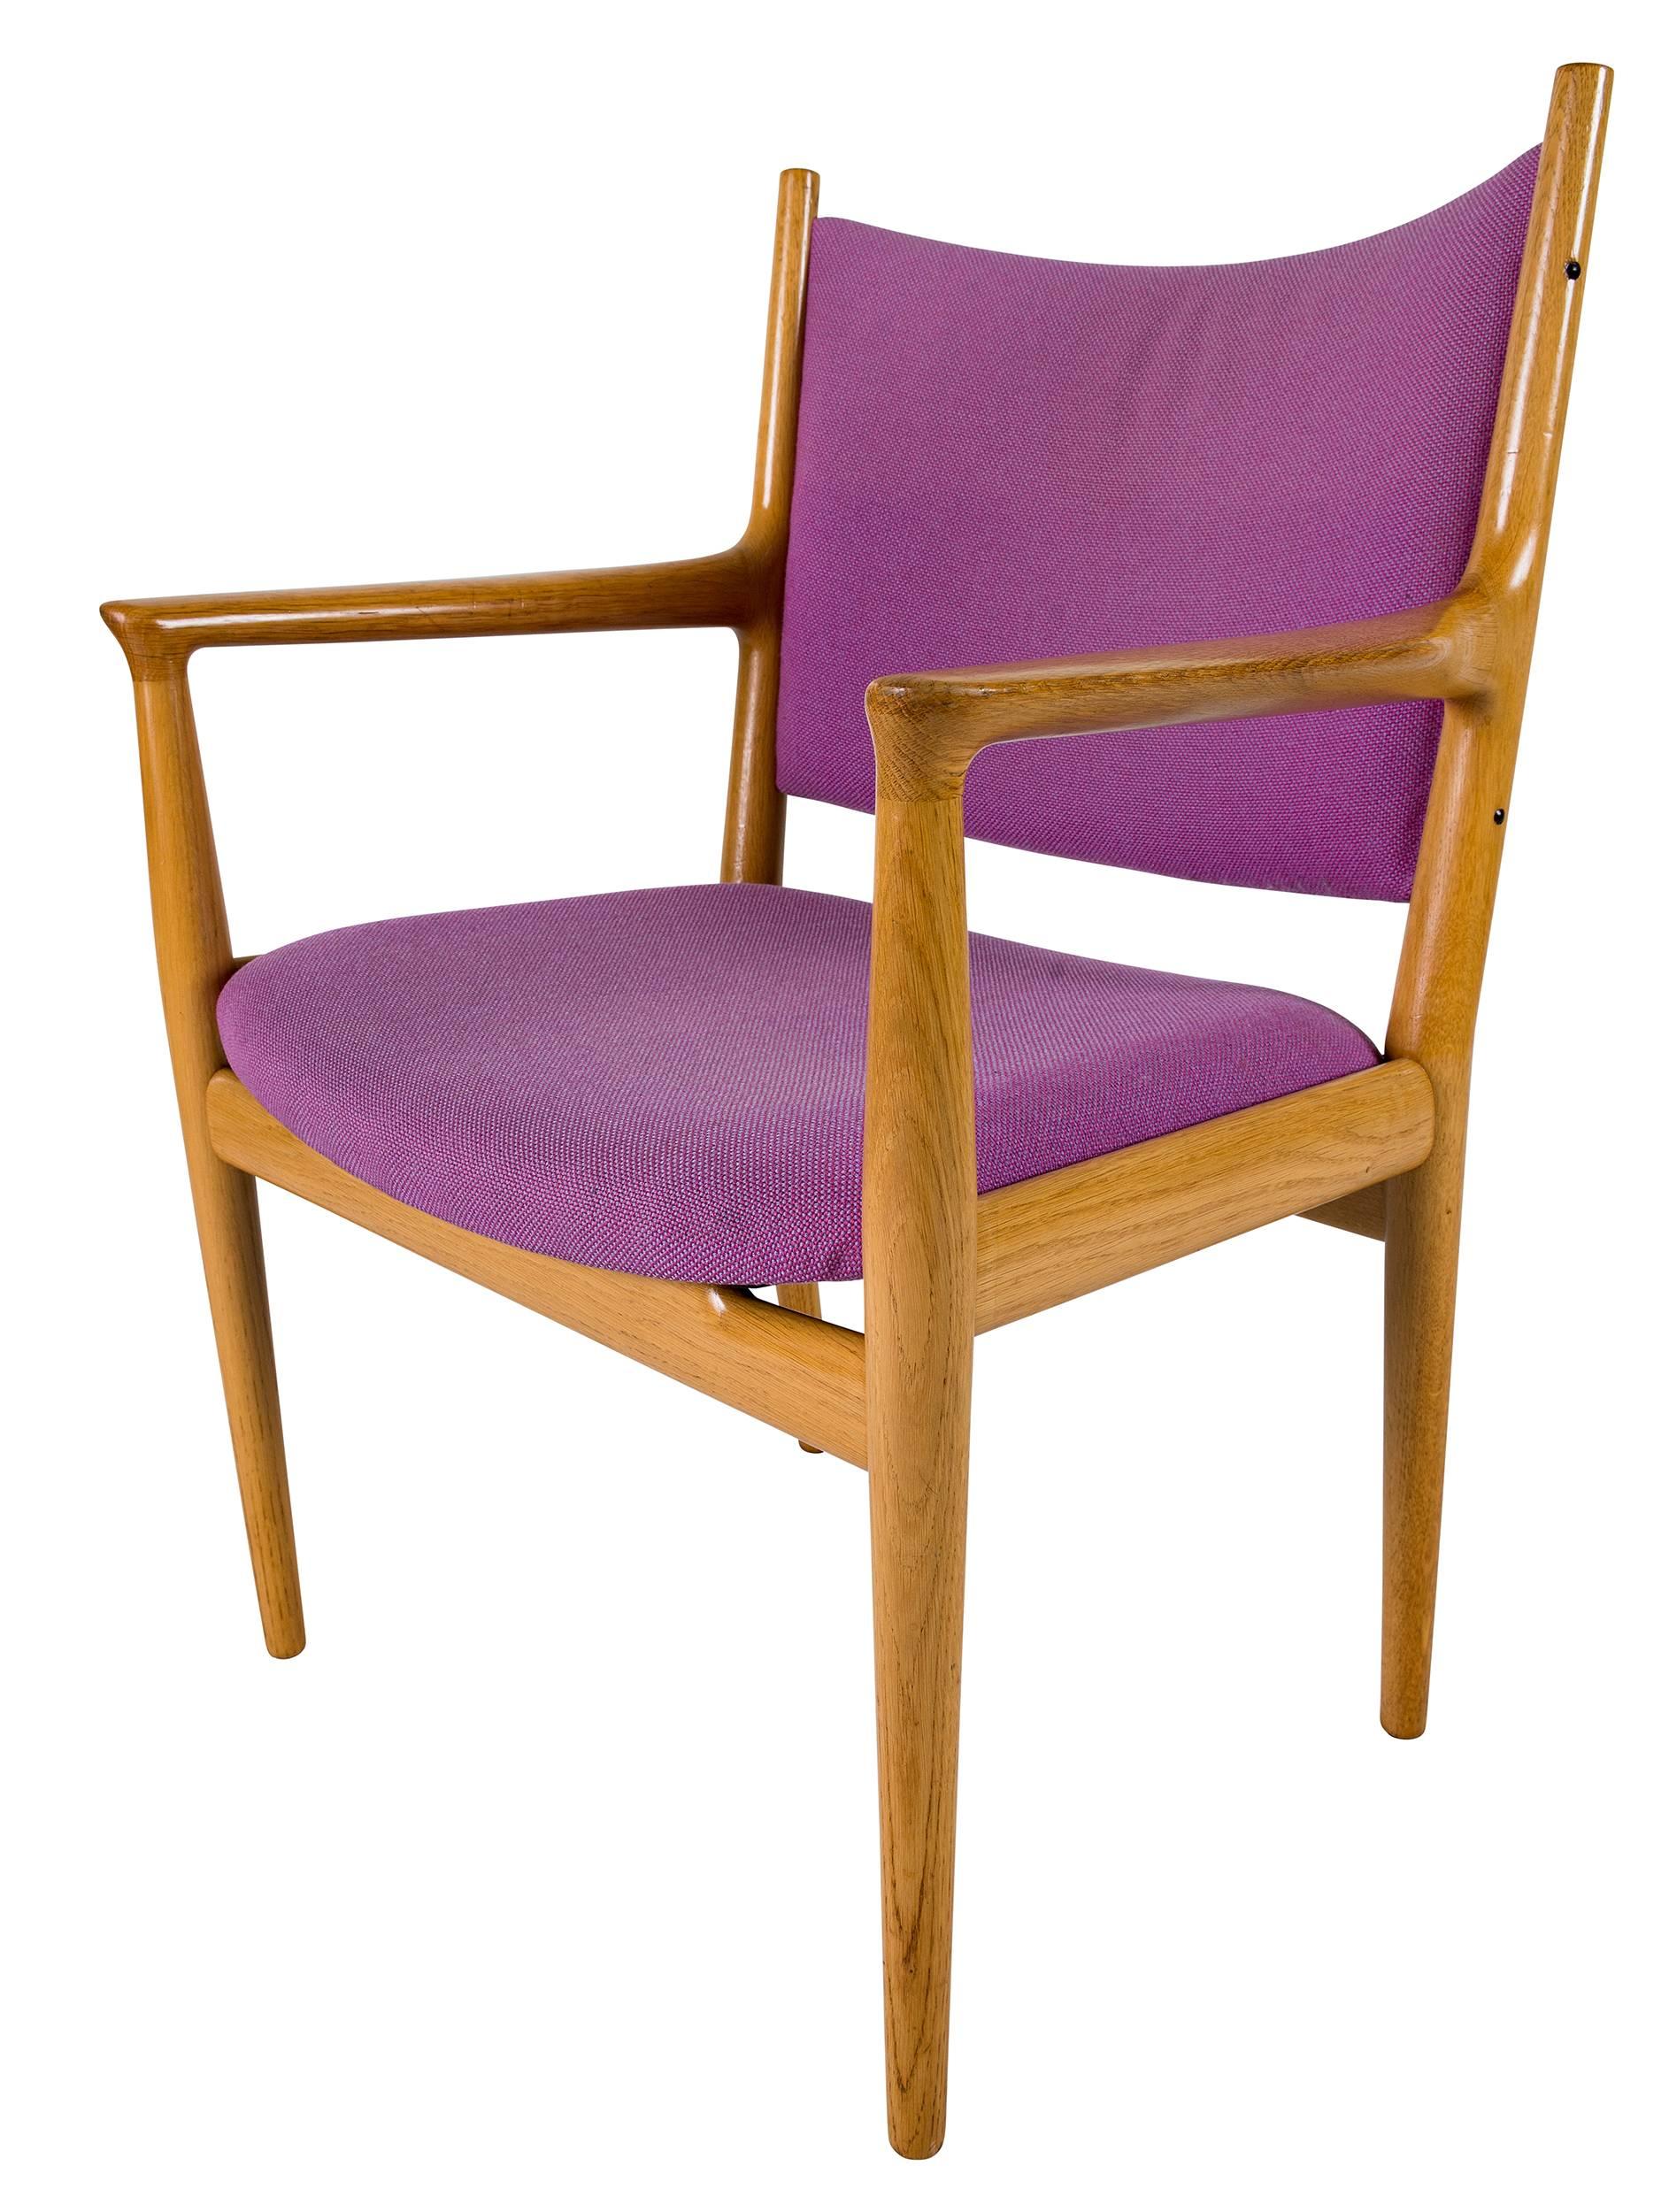 18 fauteuils Hans Wegner JH-509 conçus en 1962 et produits par Johannes Hansen. Nous en avons encore quelques uns si vous en avez besoin.  NOTE : IL N'EN RESTE QUE 6